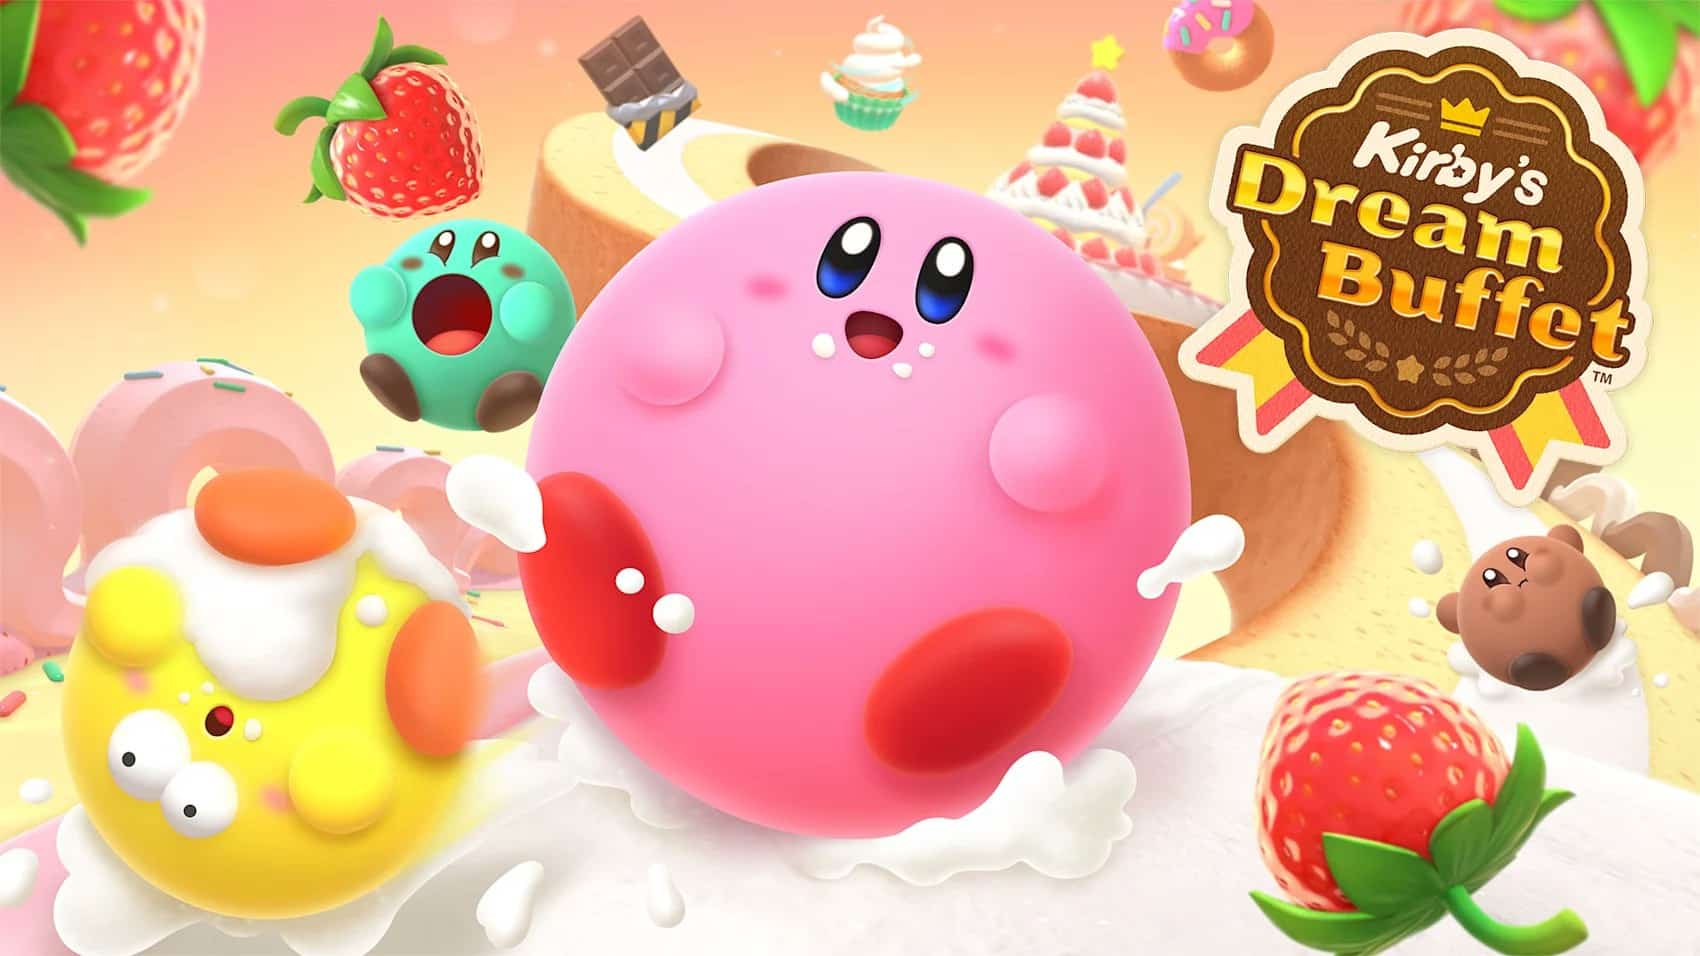 Kirby's Dream Buffet annunciato ufficialmente da Nintendo 6